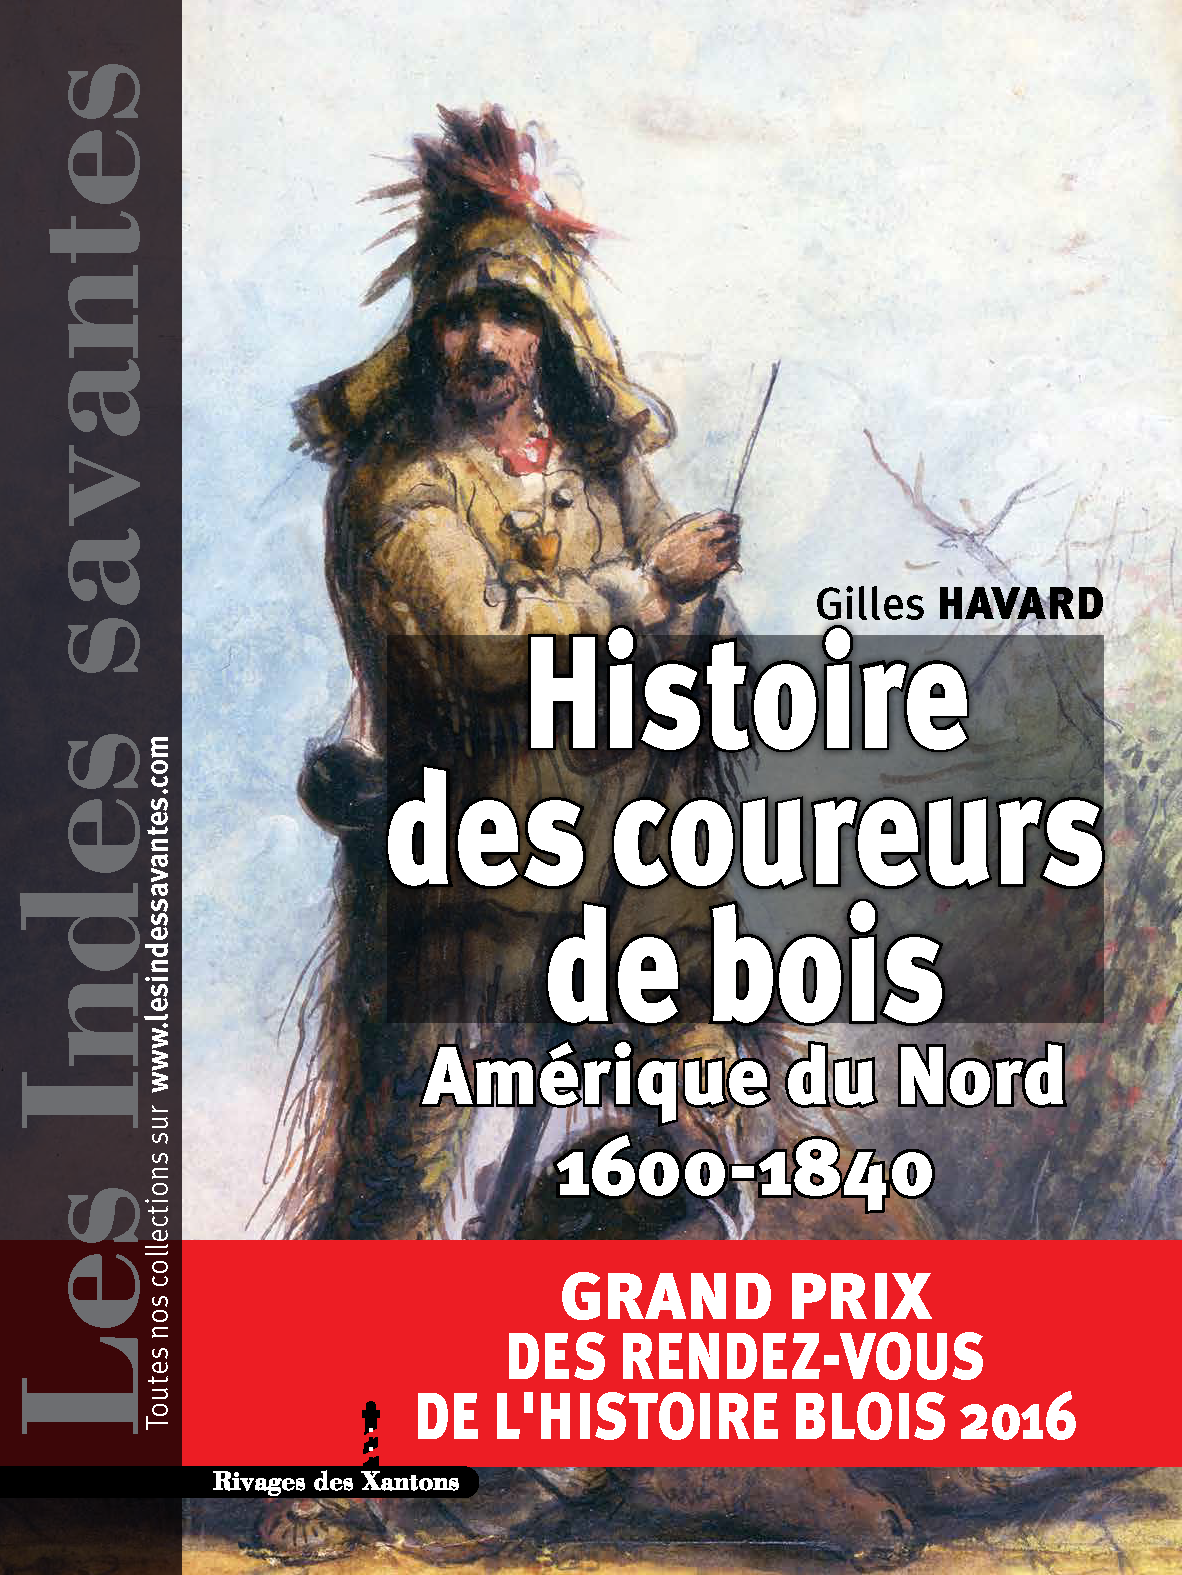 Le Grand Prix des Rendez-vous de l'histoire de Blois 2016 a été attribué à Gilles Havard